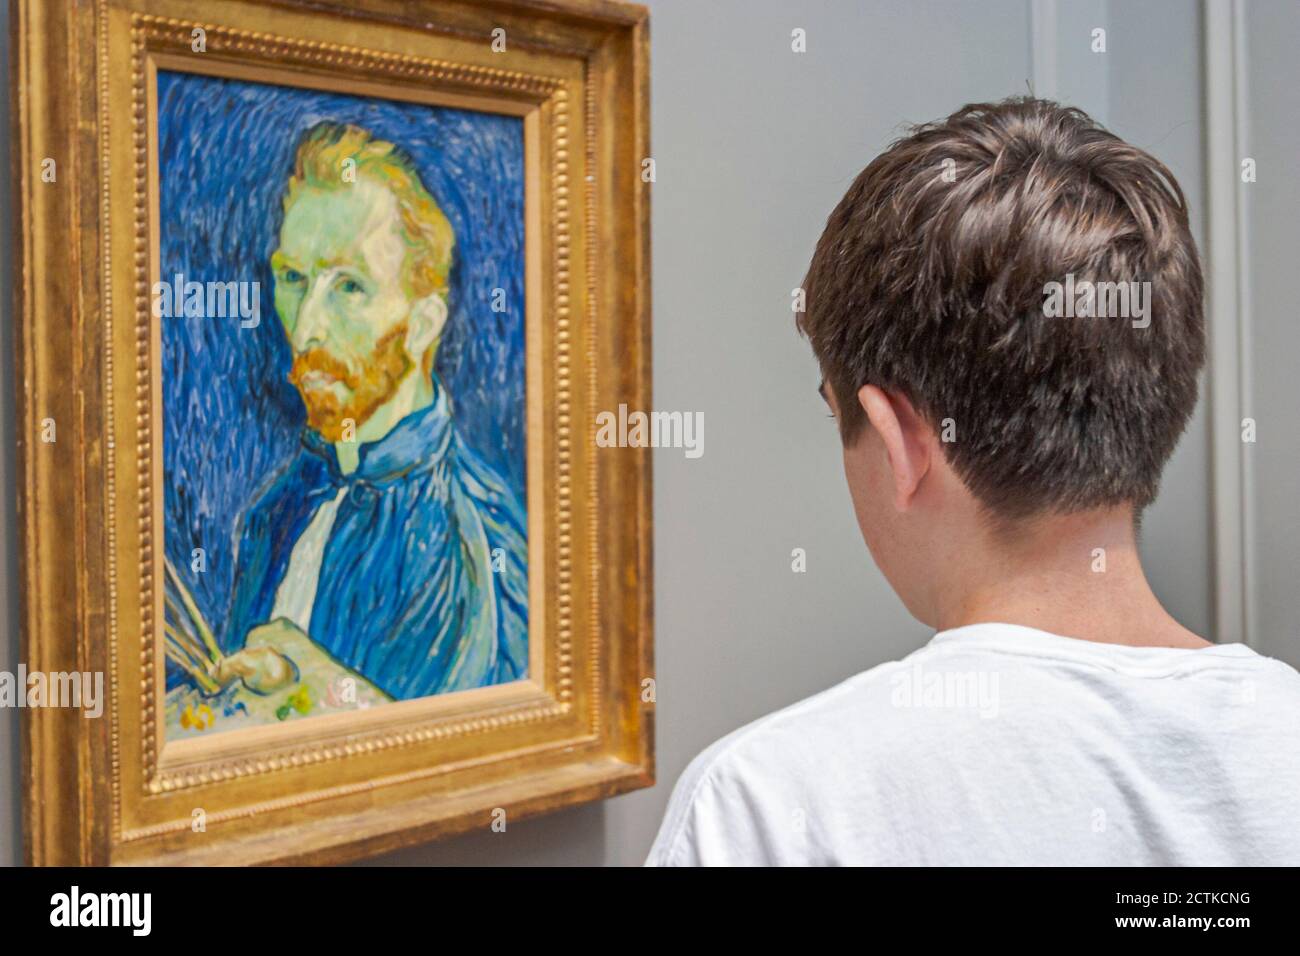 Washington DC, Galería Nacional de Arte, Vincent van Gogh pintando, adolescente se ve mirando autorretrato, Foto de stock